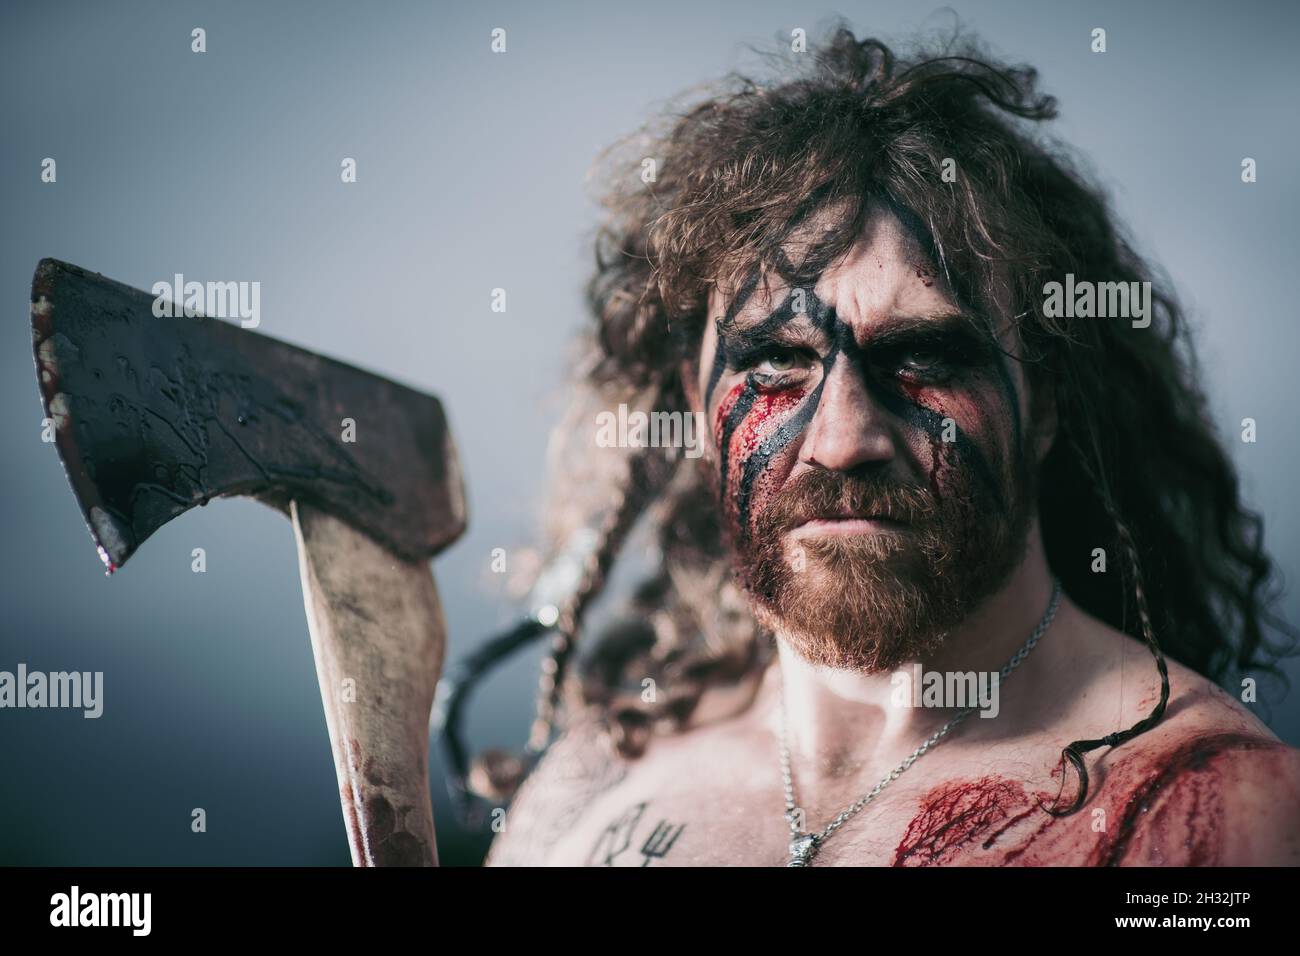 Ritratto vichingo guerriero medievale con tatuaggio sulla pelle, tagli sul corpo e trecce in capelli con armi per attaccare il nemico. Concept foto storica Foto Stock